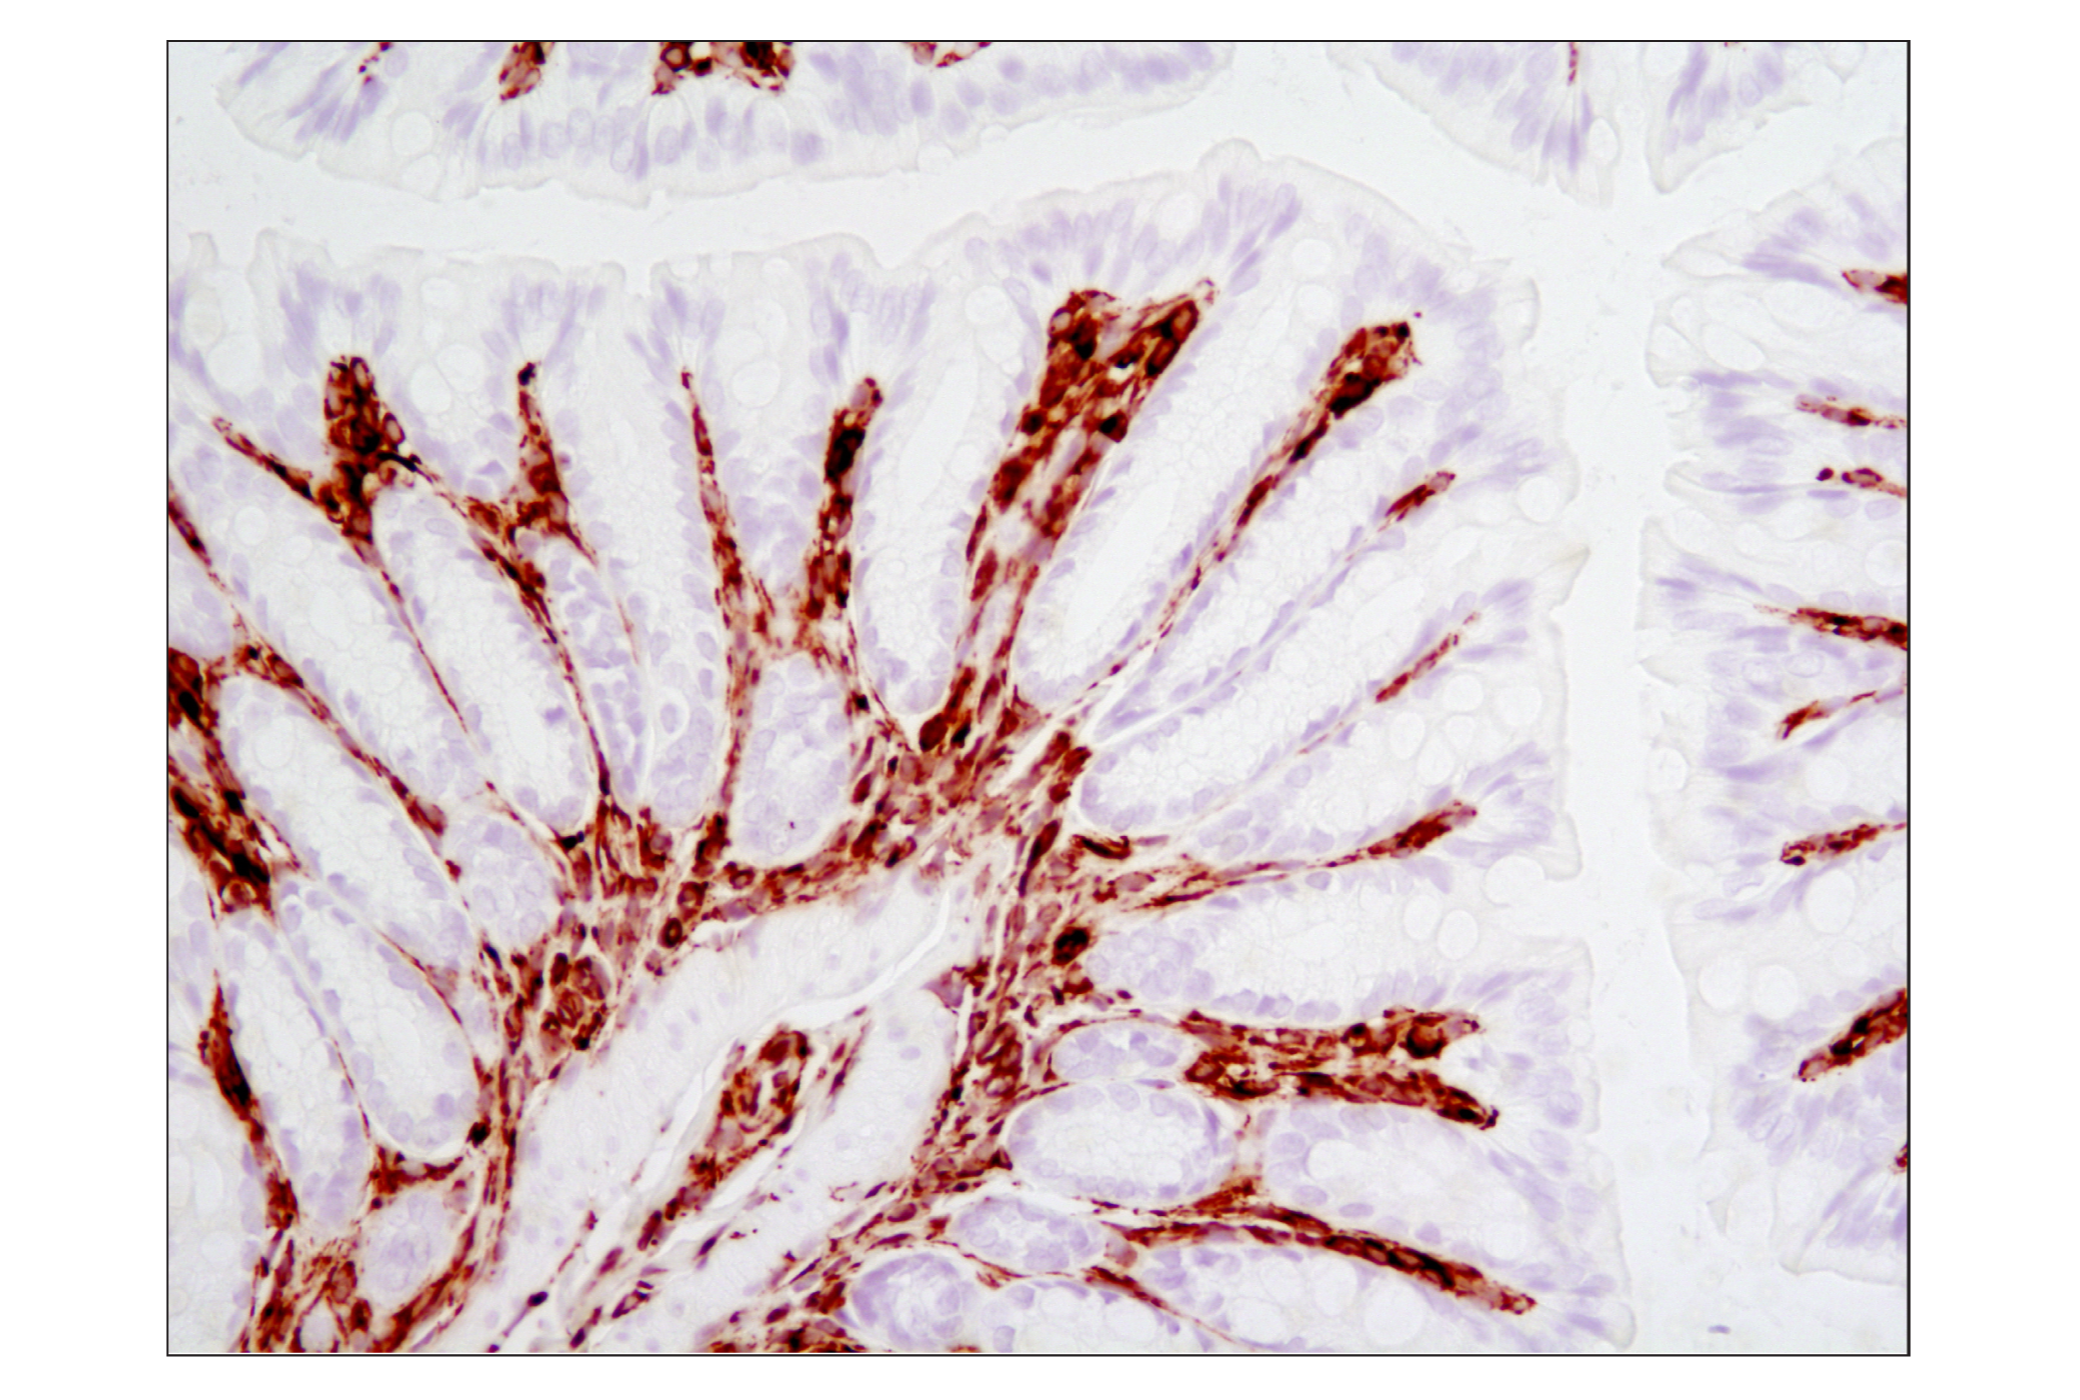  Image 25: Cell Fractionation Antibody Sampler Kit